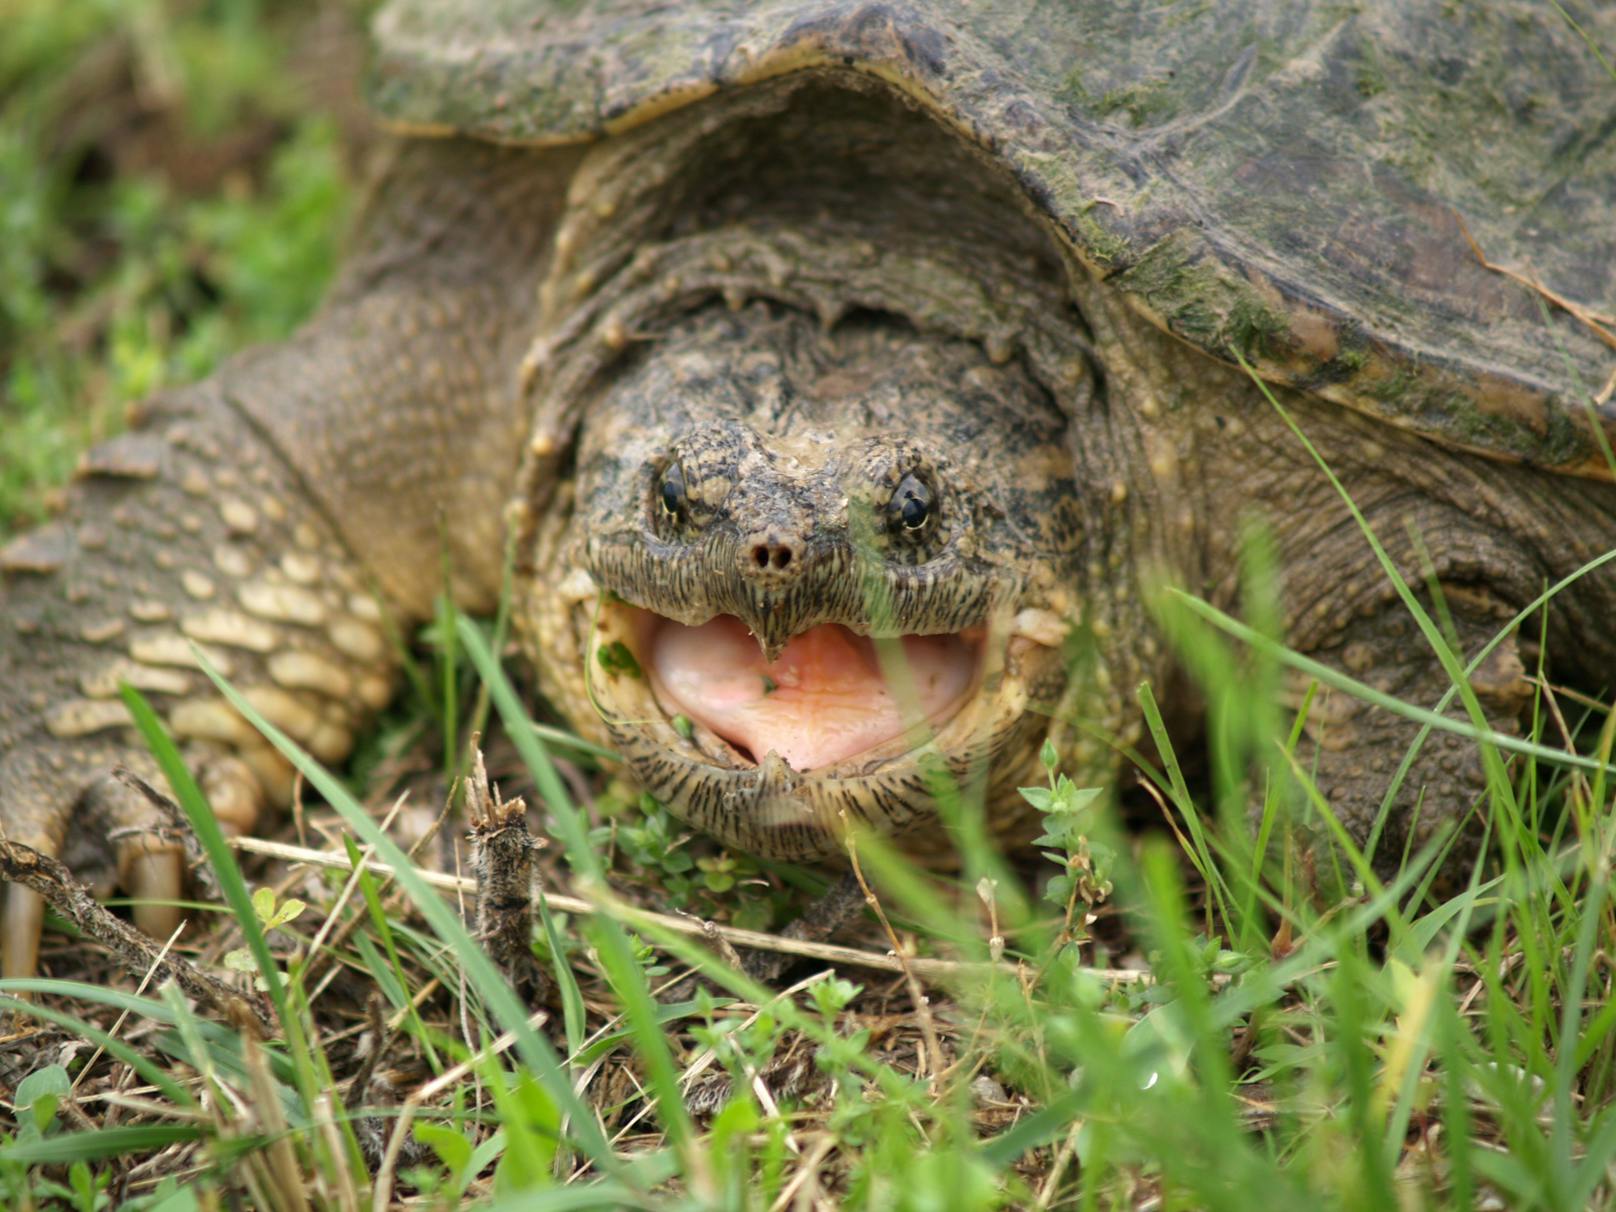 Freibad in Angst – gefährliche Schildkröte entdeckt